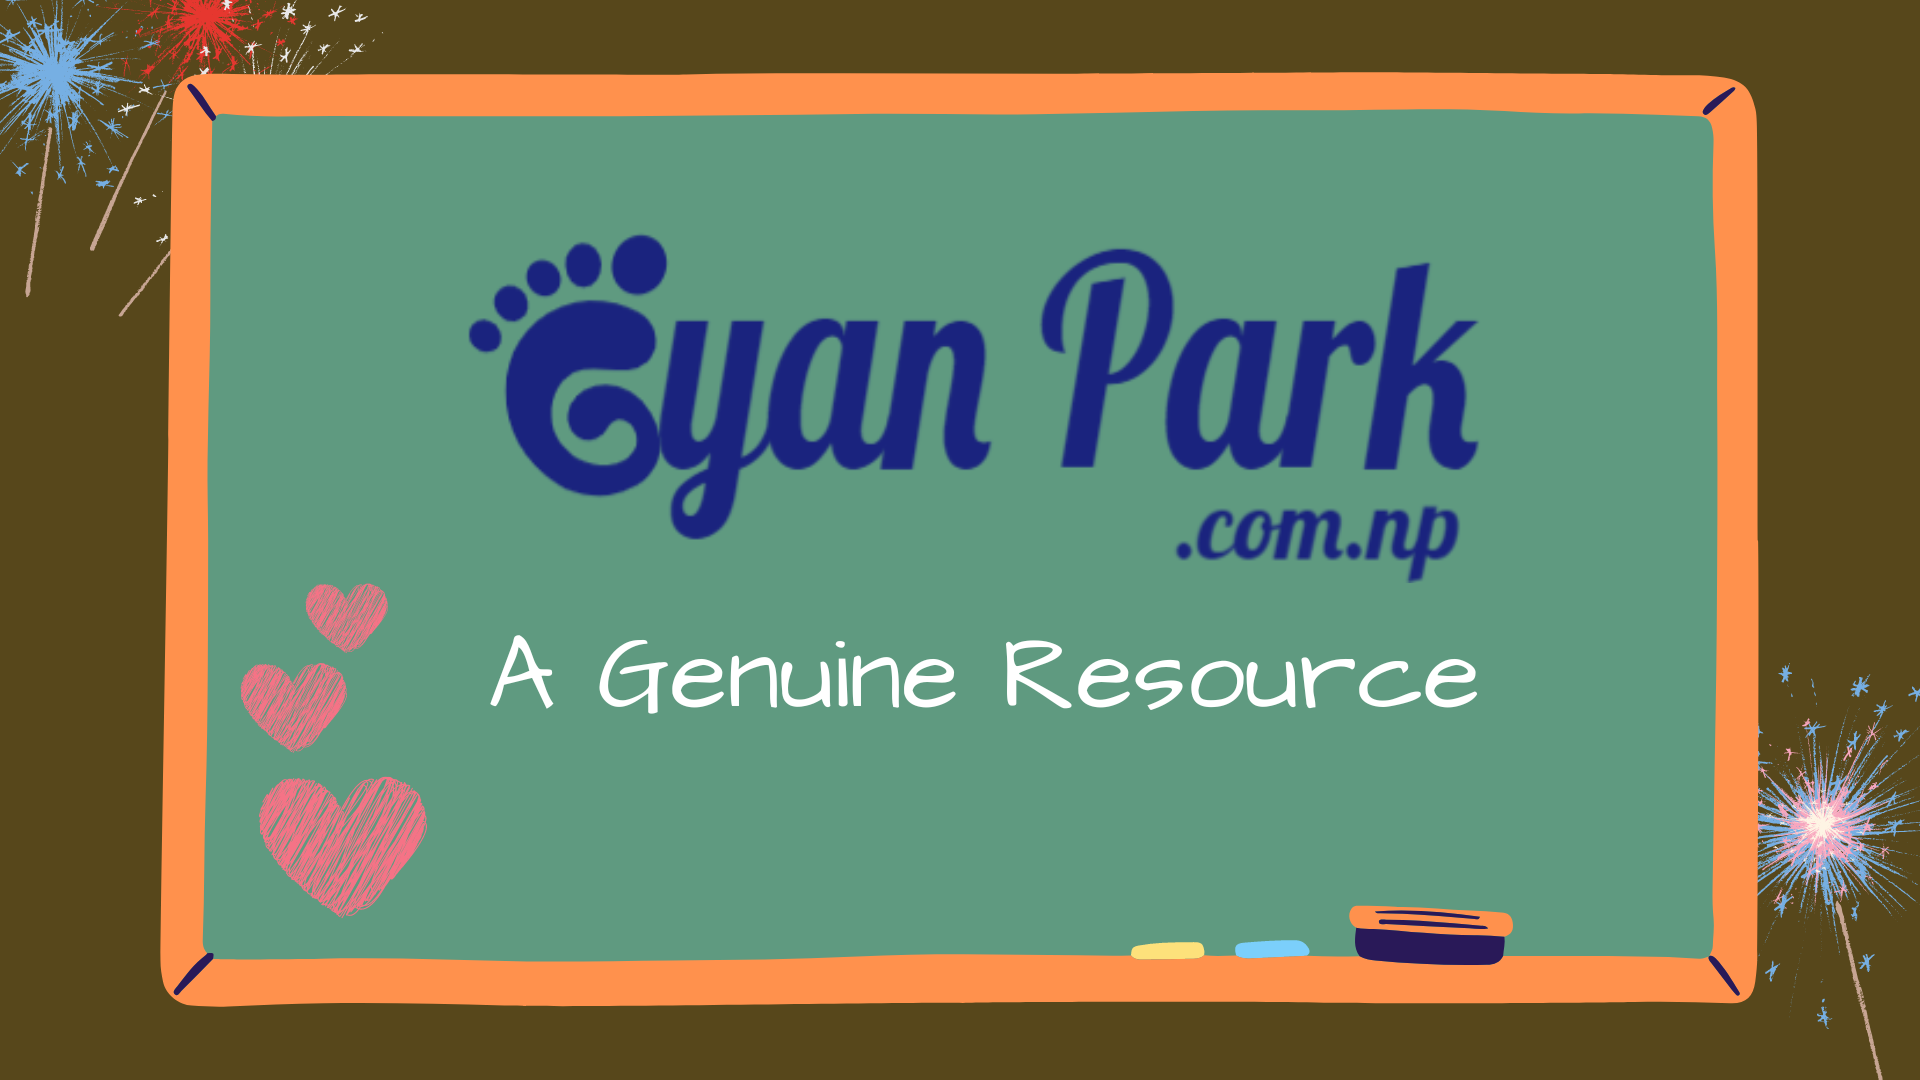 GyanPark